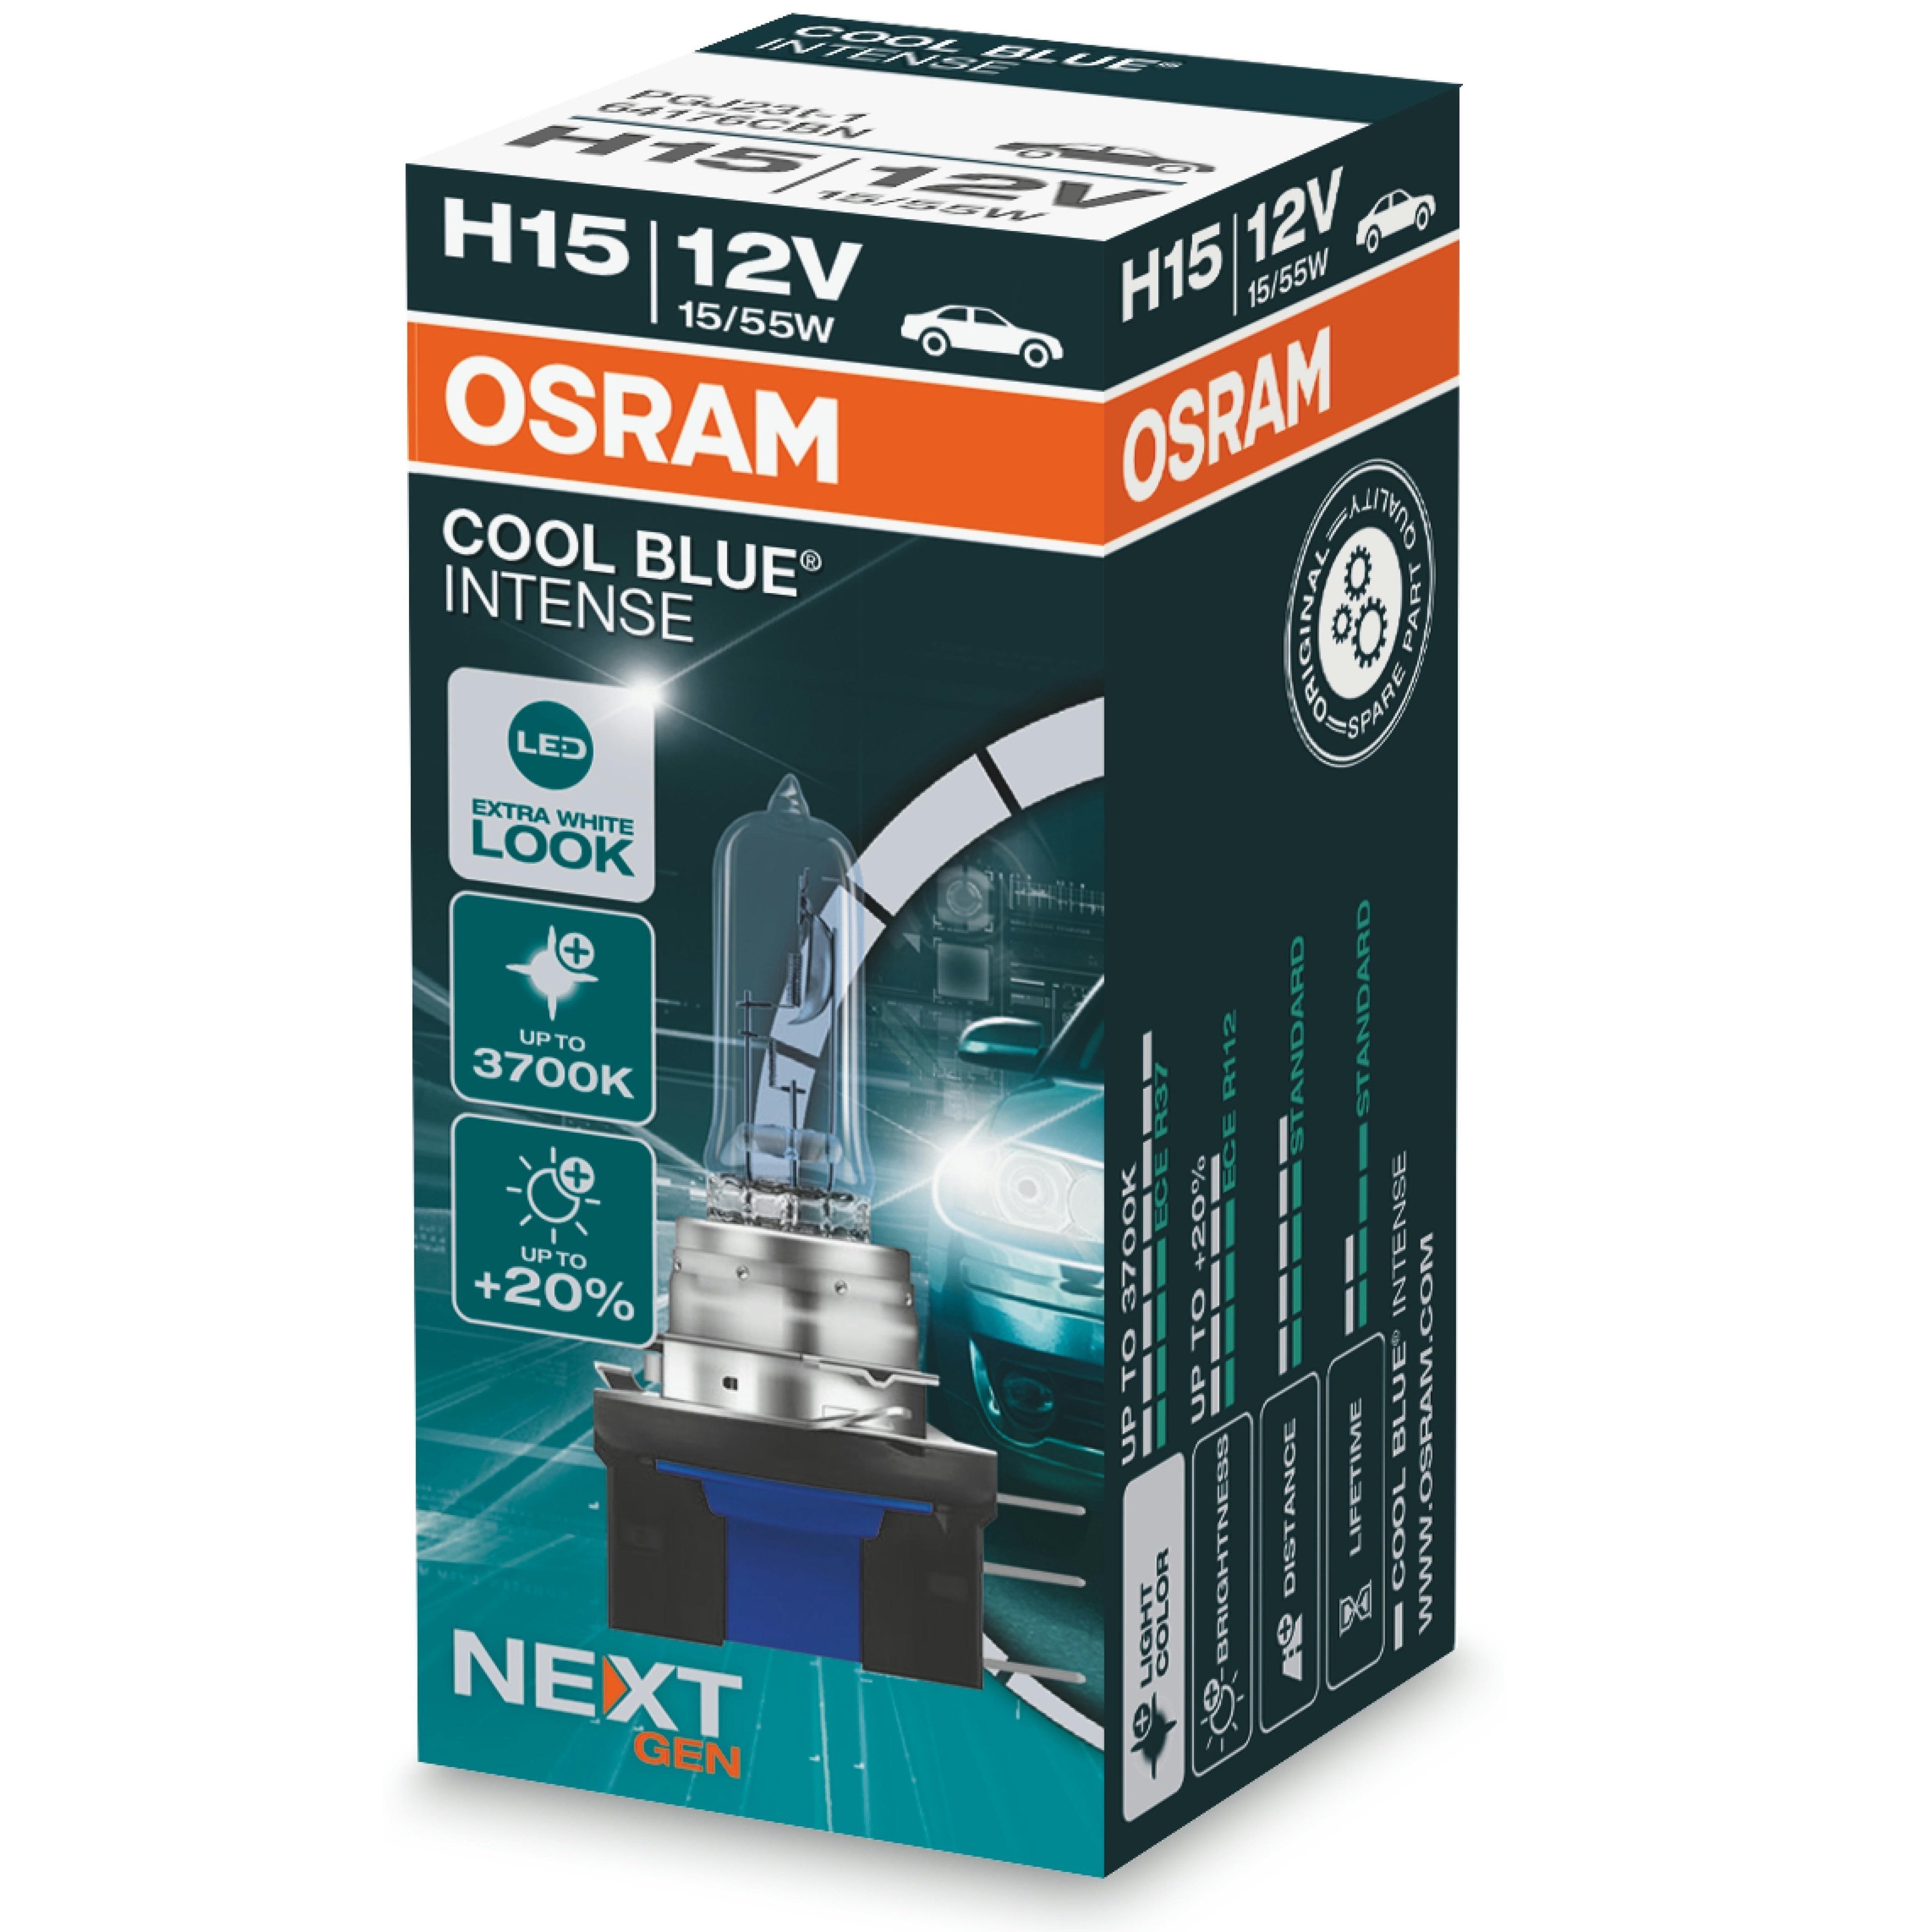 Лампа Osram галогеновая 12V H15 15W Pgj23T-1 Cool Blue Intense Next Gen +100% (OS_64176_CBN) фото 1